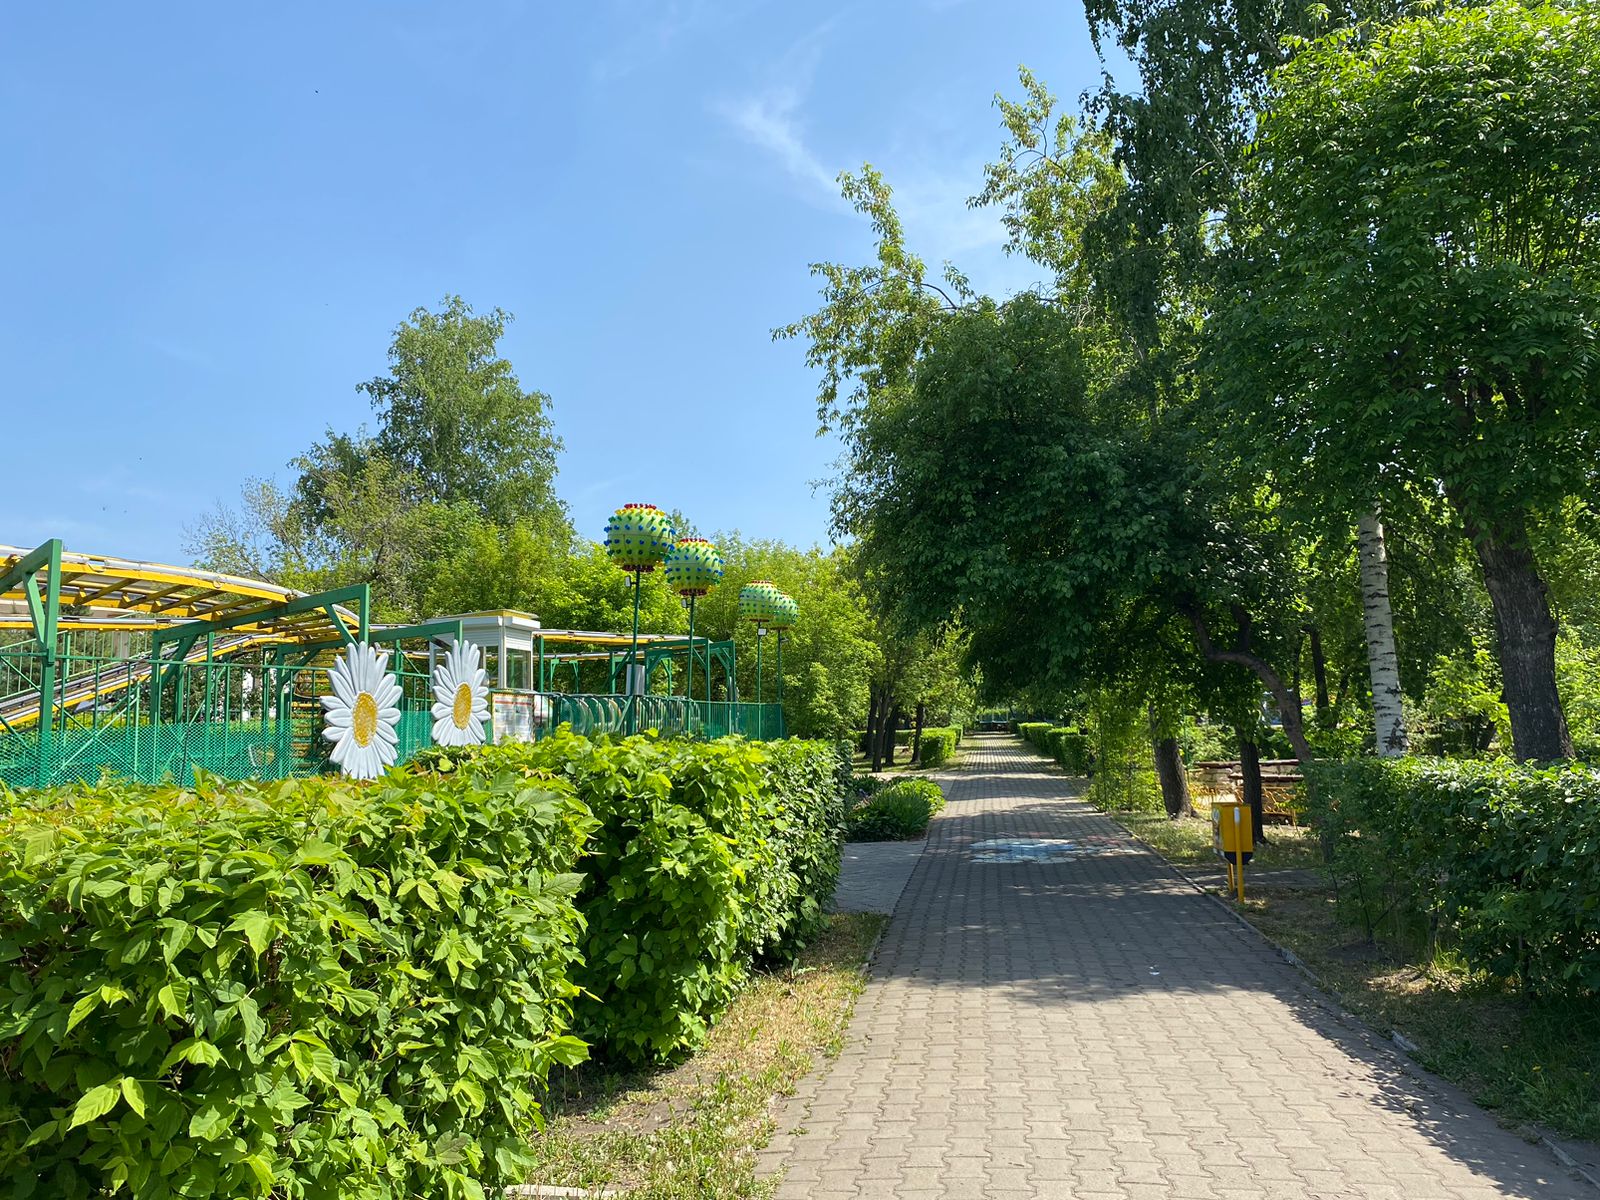 Пять детей пострадали на аттракционе в парке Петропавловска